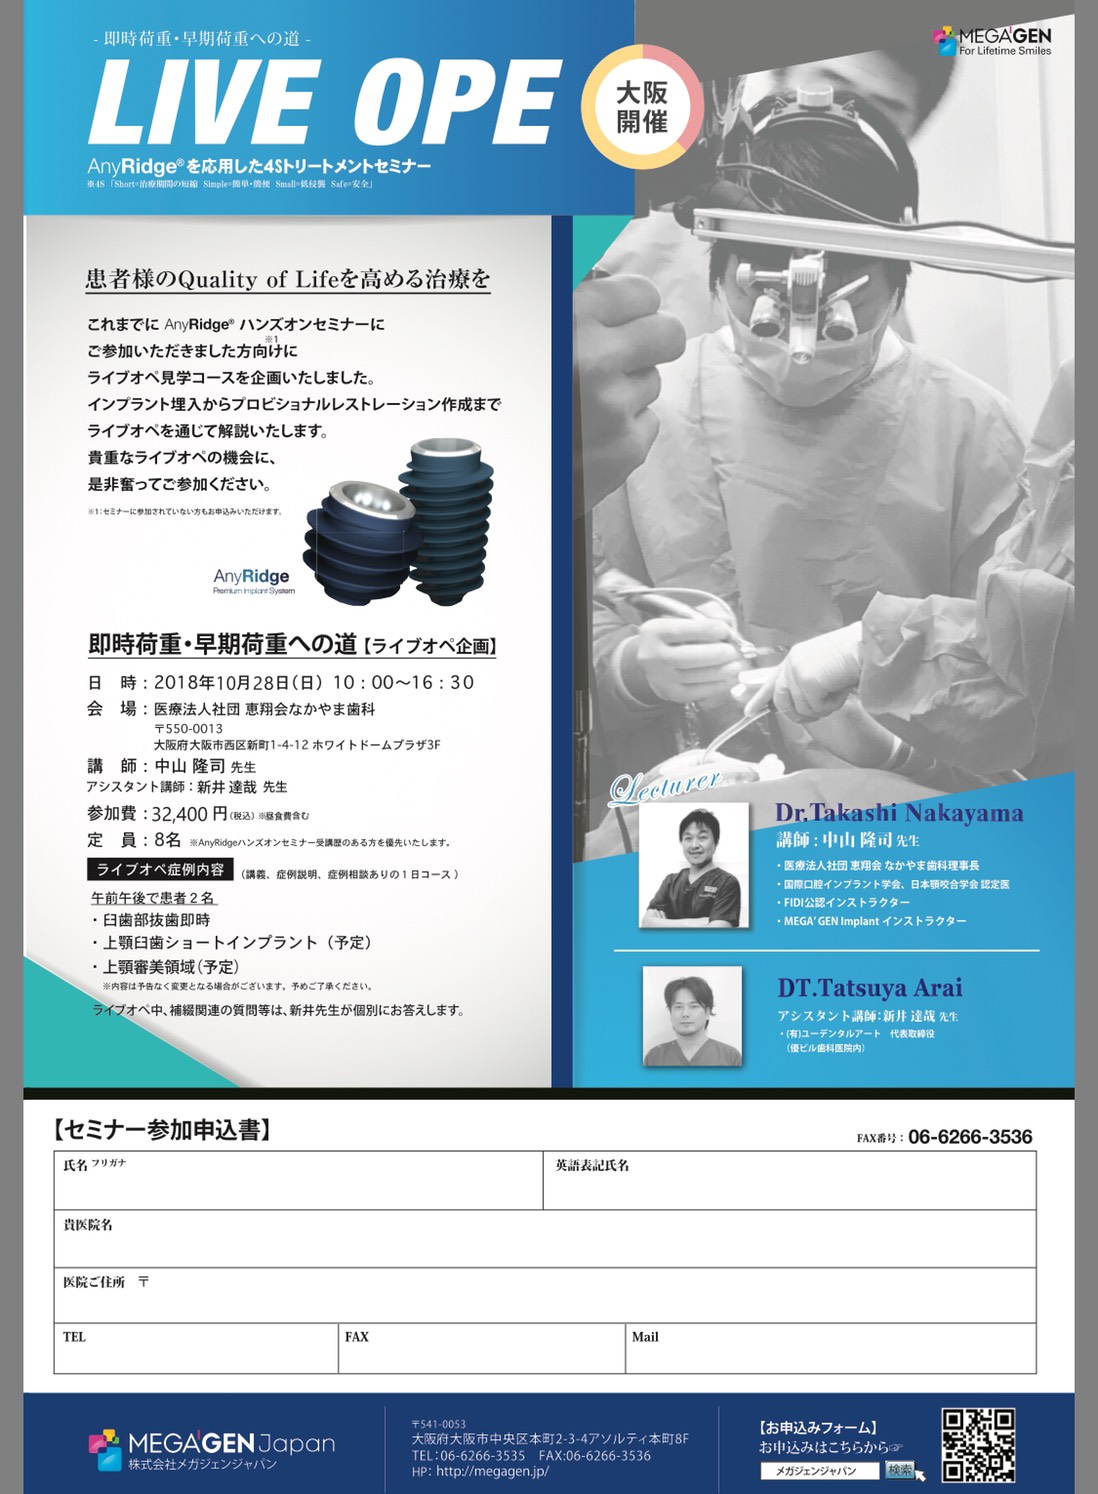 【歯科医師向け情報】【2018/10/28 大阪】｢インプラントライブオペ｣セミナーの講師を務めます